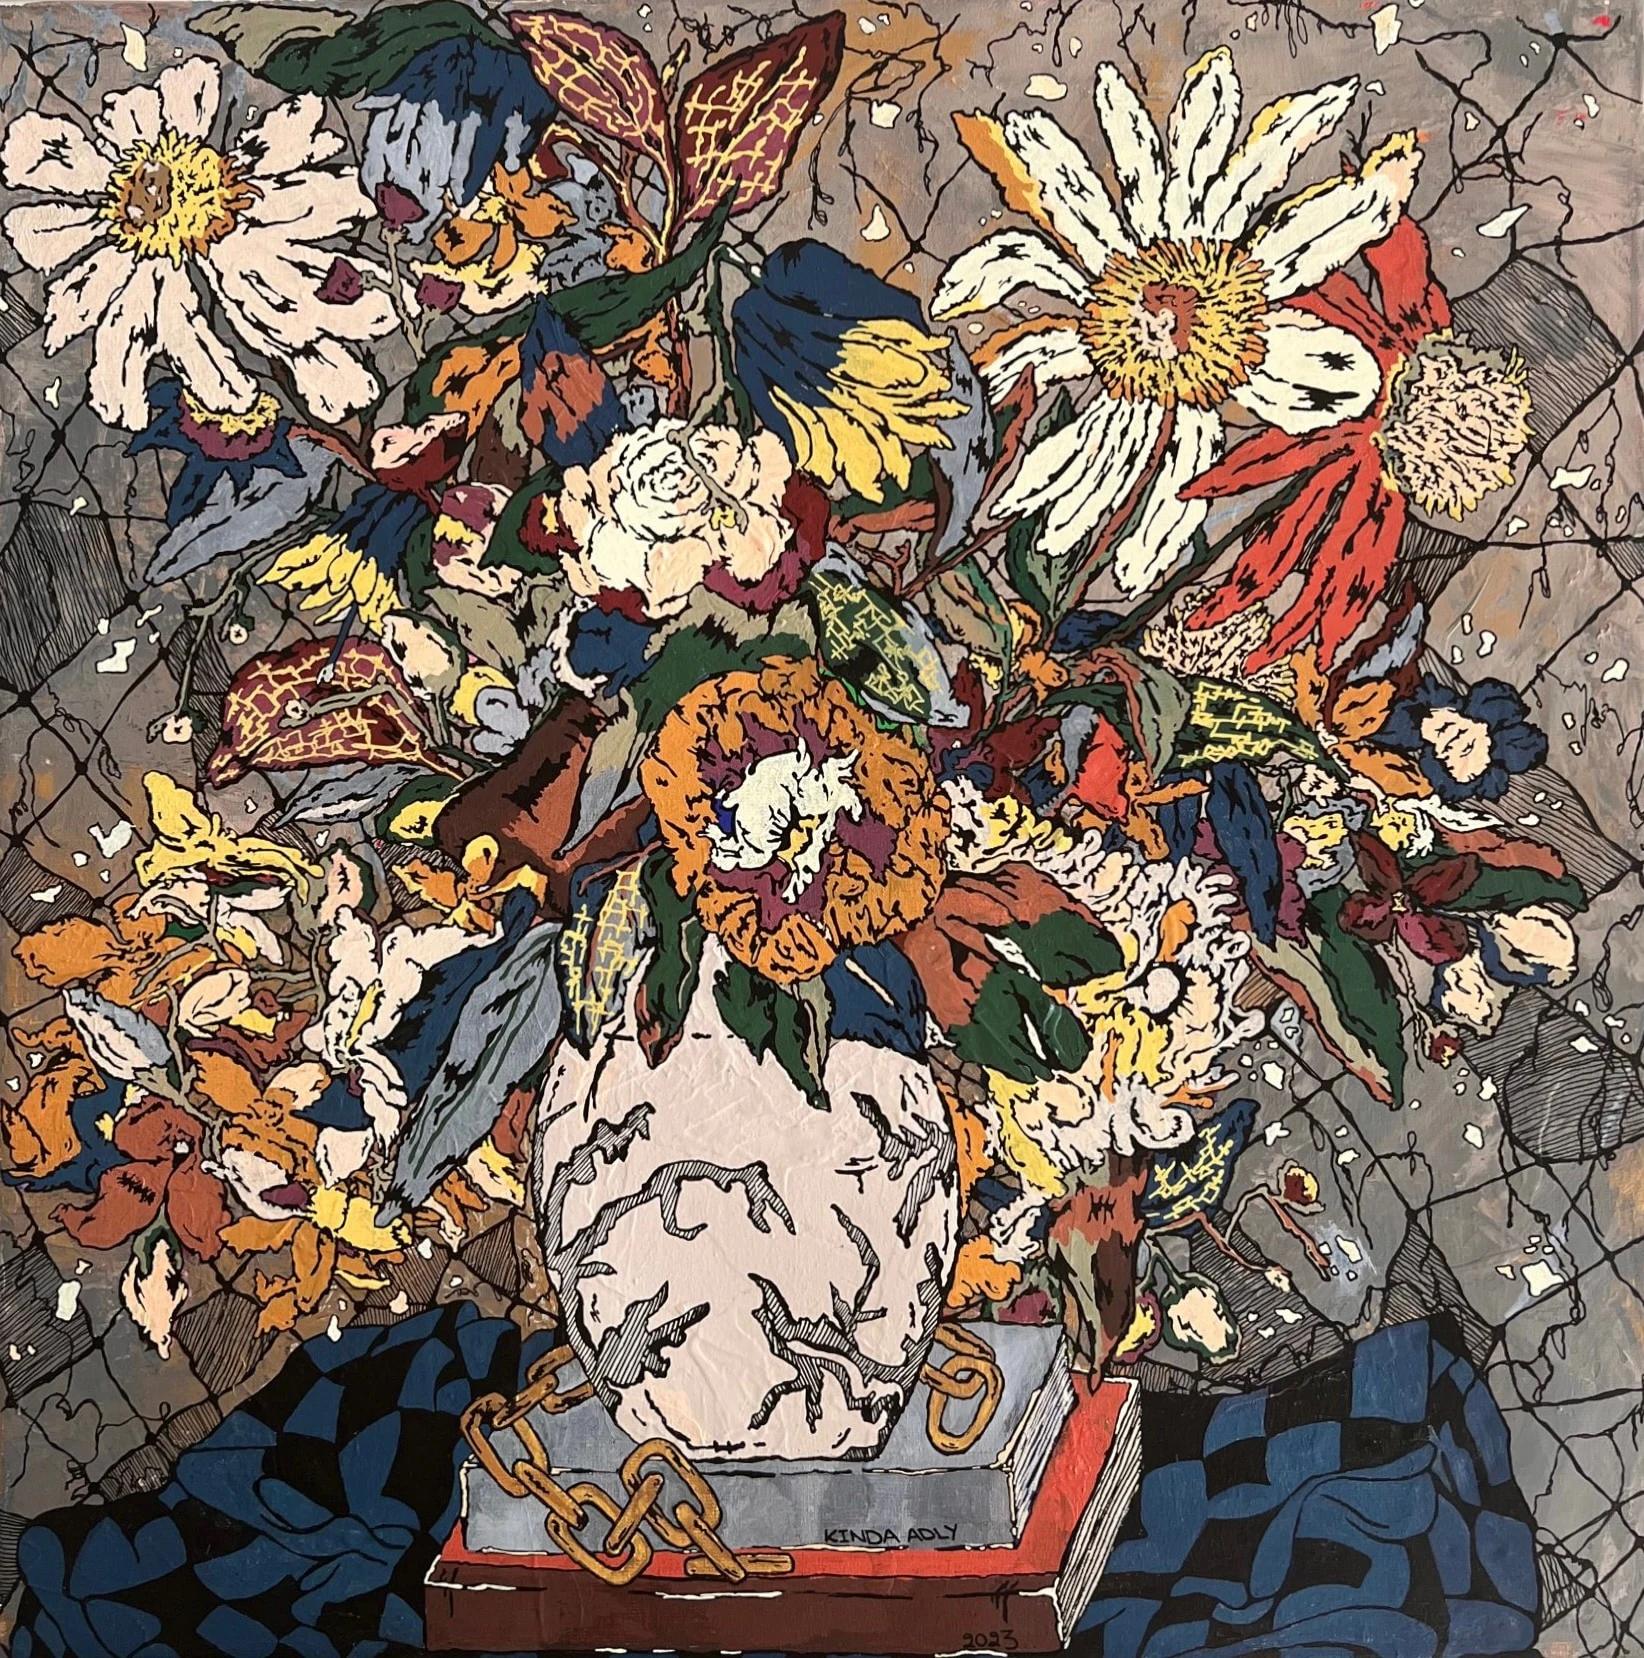 Peinture abstraite "Blumen" de 20" x 20" pouces par Kinda Adly

Kinda ADS, née en Égypte en 1989, est une artiste autodidacte. Elle a grandi en Égypte et vit actuellement en Suisse.
Son amour pour l'art l'a incitée à expérimenter les couleurs à